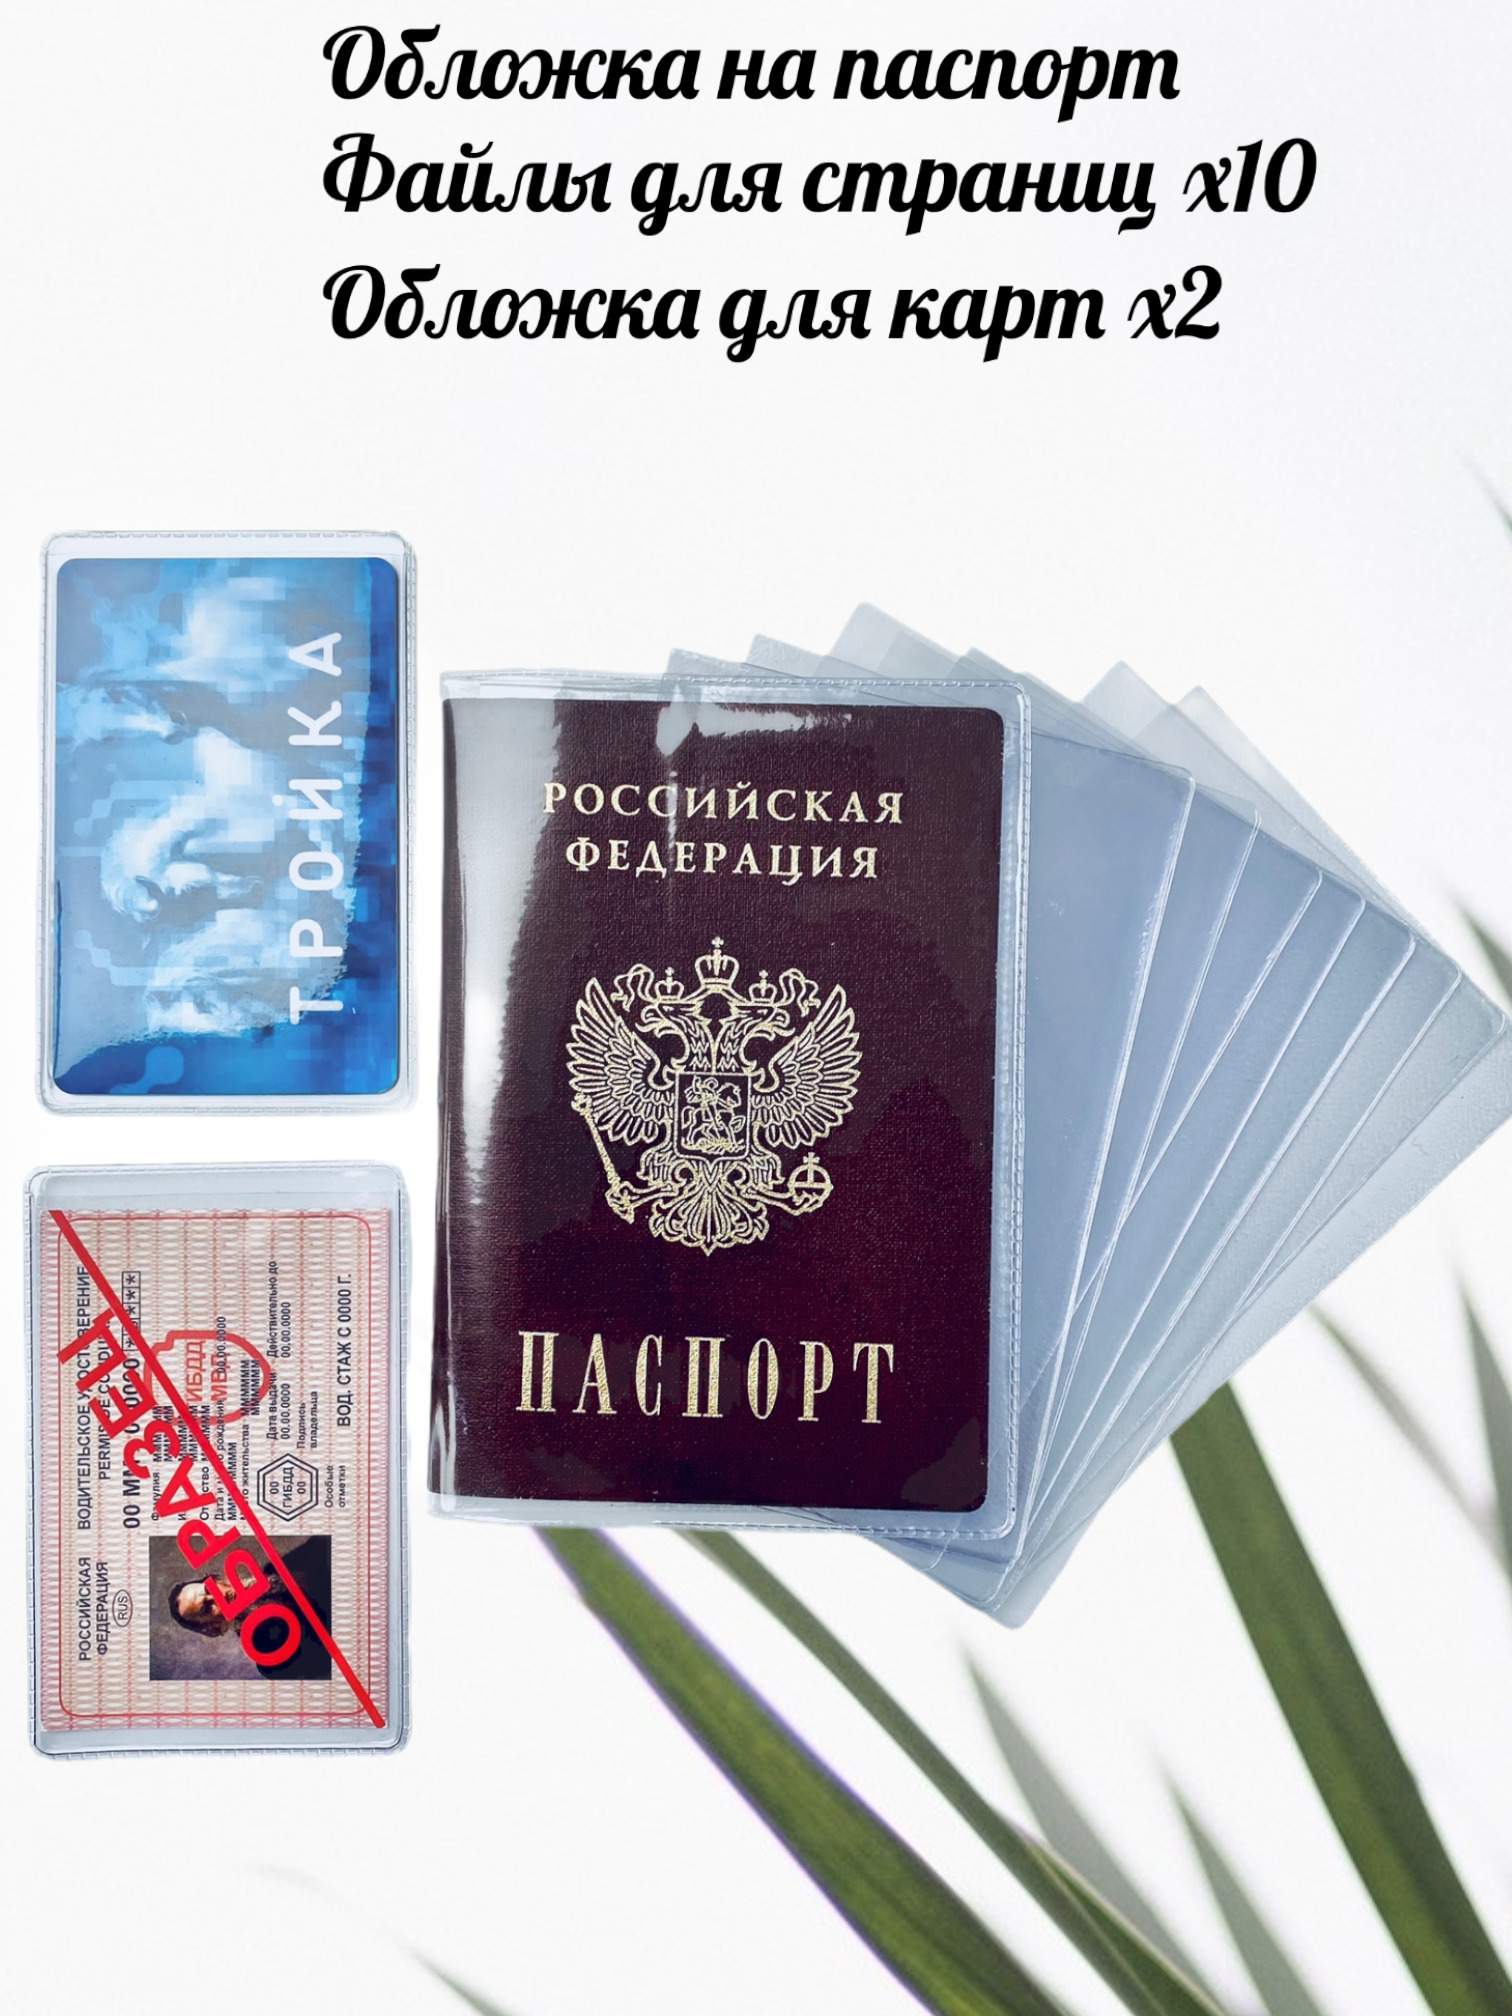 Обложка для паспорта под нанесение в интернет-магазине c доставкой по РФ